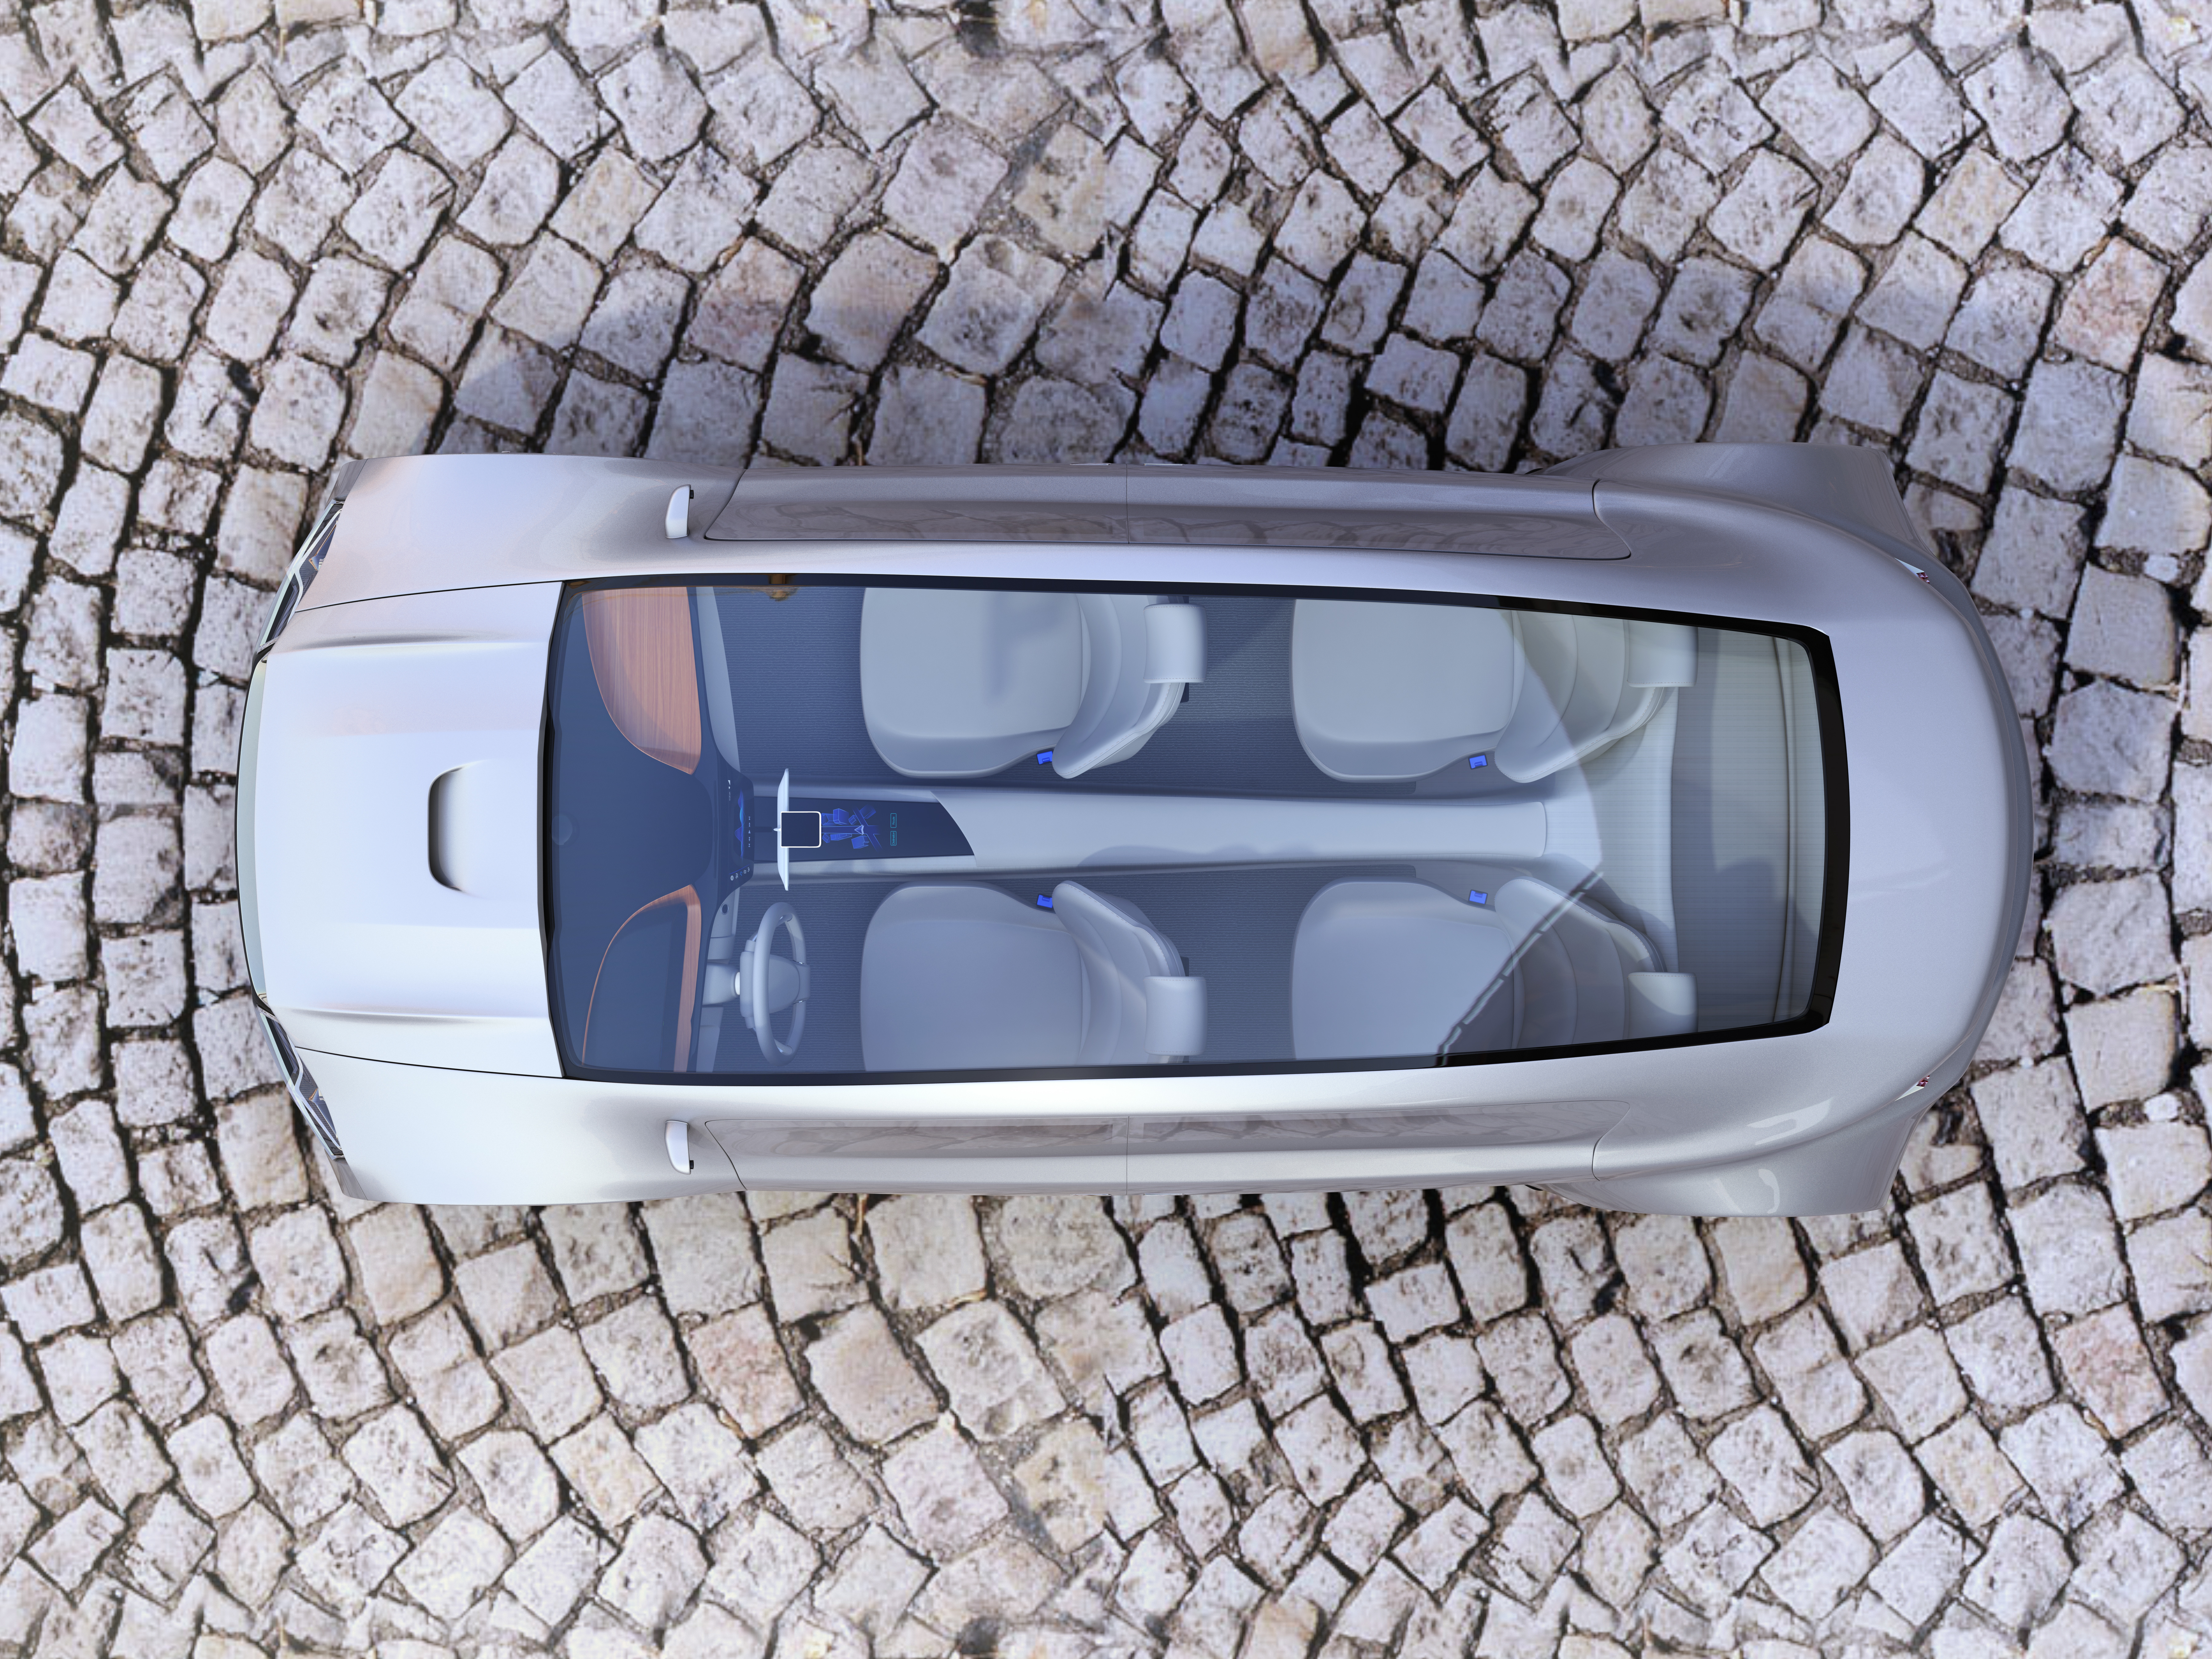 Top view of autonomous car on cobblestone ground. 3D rendering image.